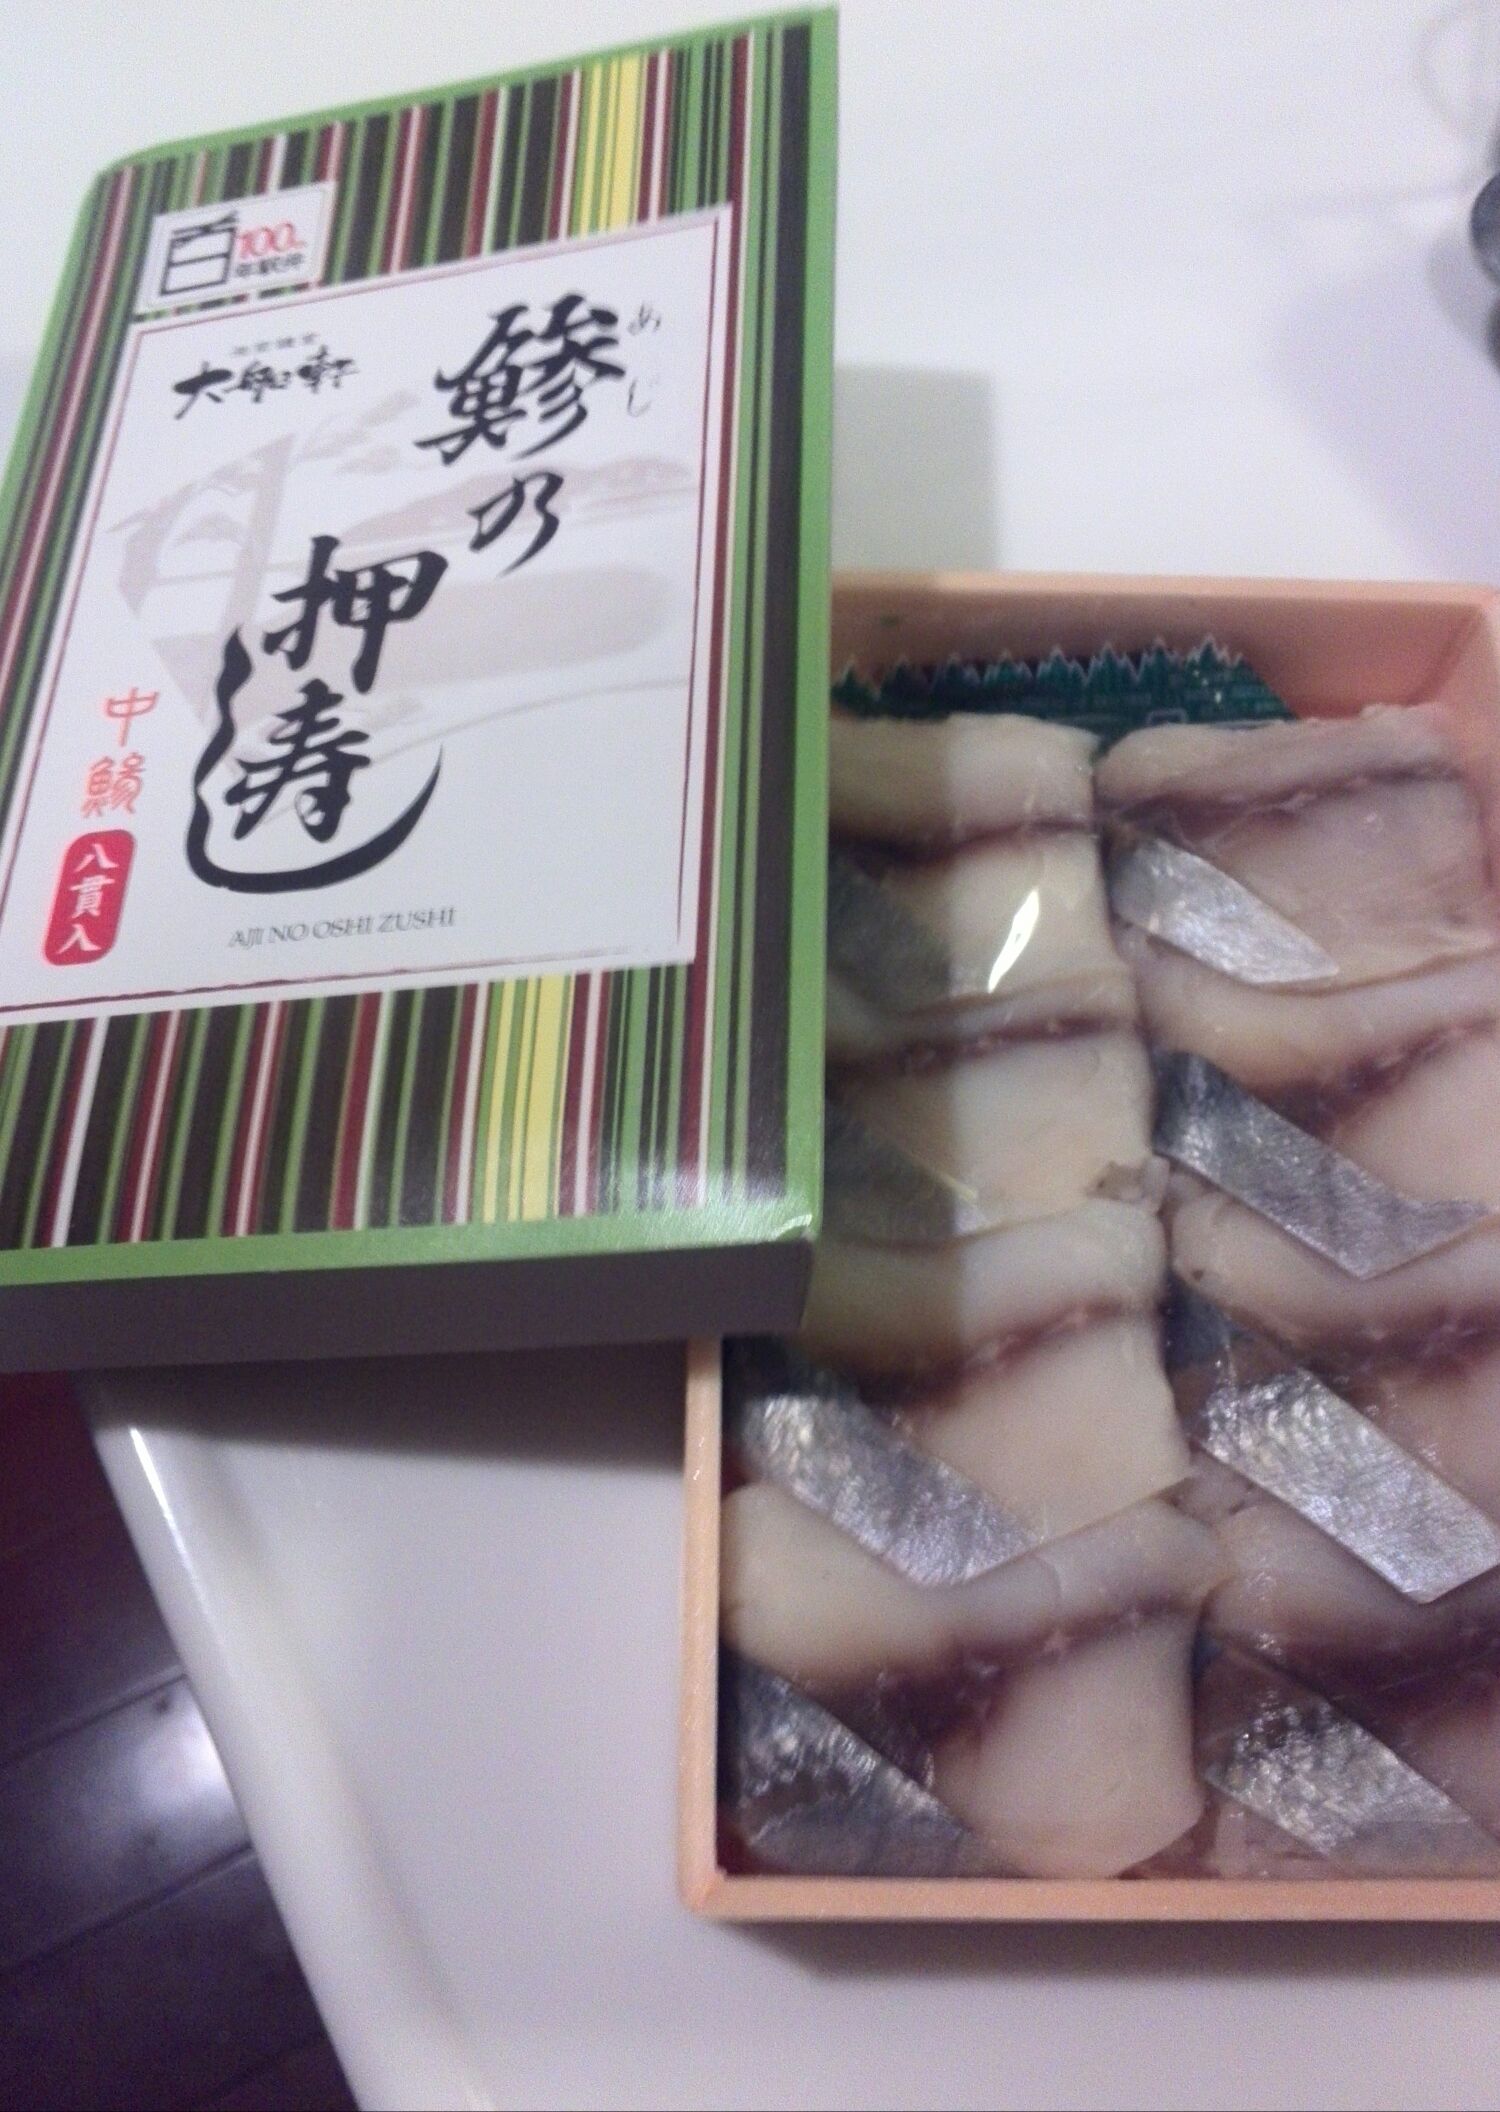 今日、鎌倉駅で購入した鯵の押寿司